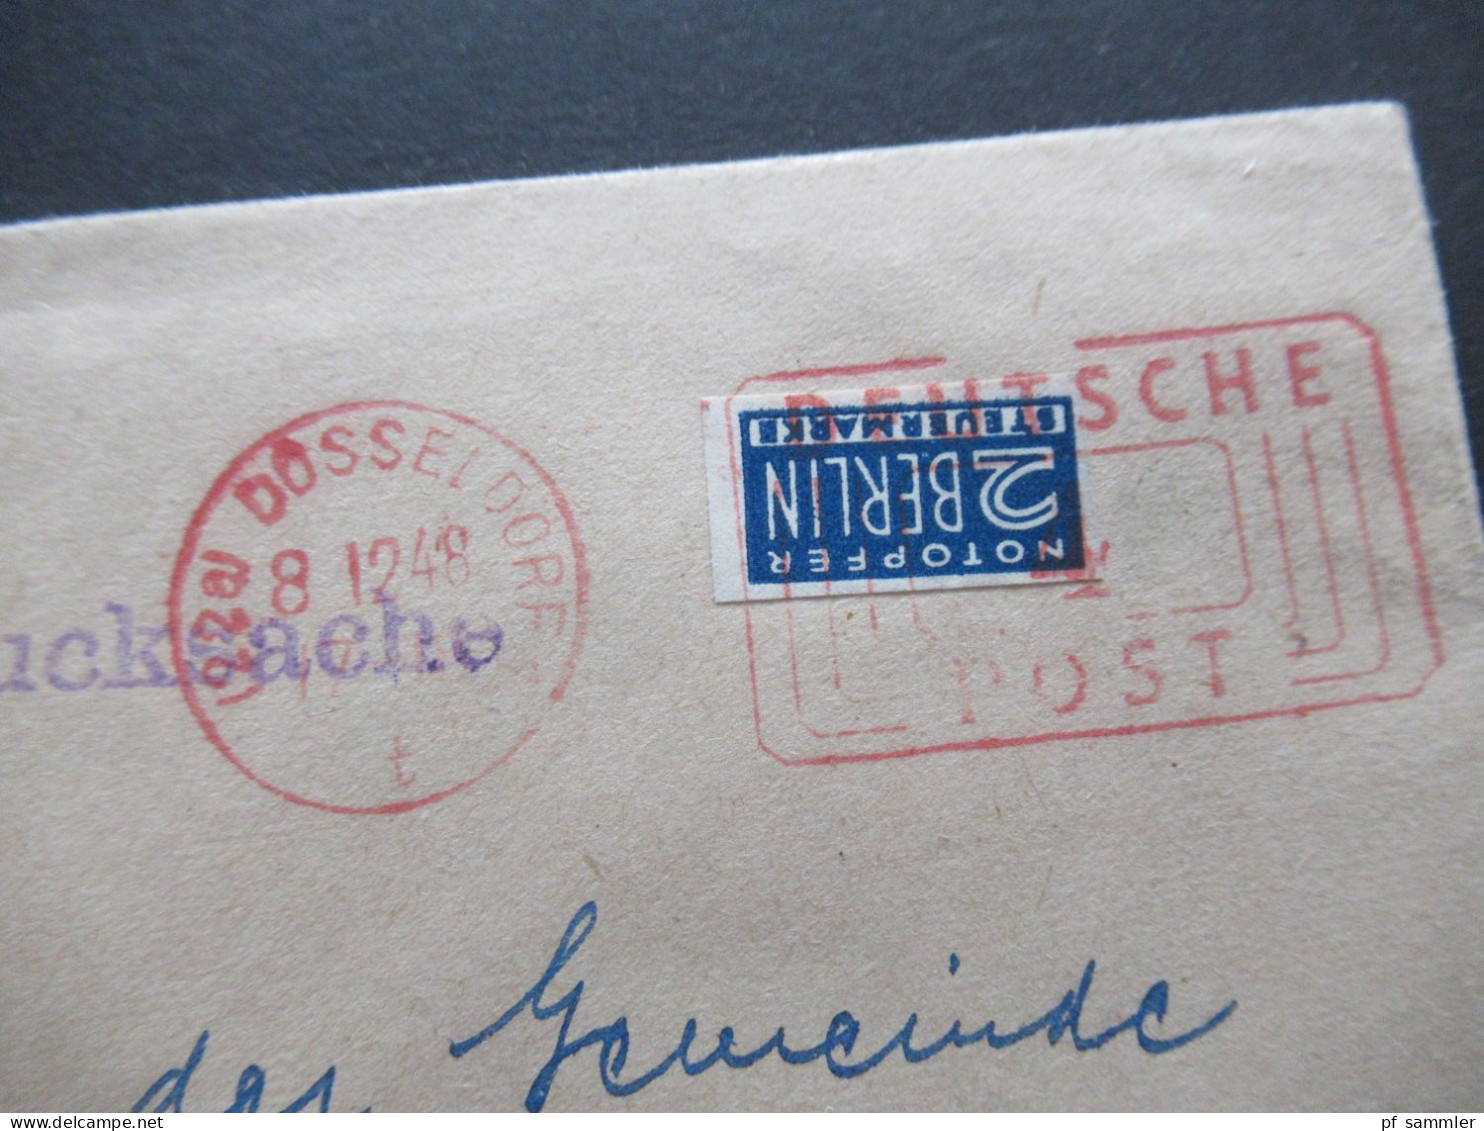 Bizone 12.1948 Notopfer Ungezähnt Mit Freistempel Deutsche Post Düsseldorf Drucksache Werner Verlag DD Lohausen - Storia Postale